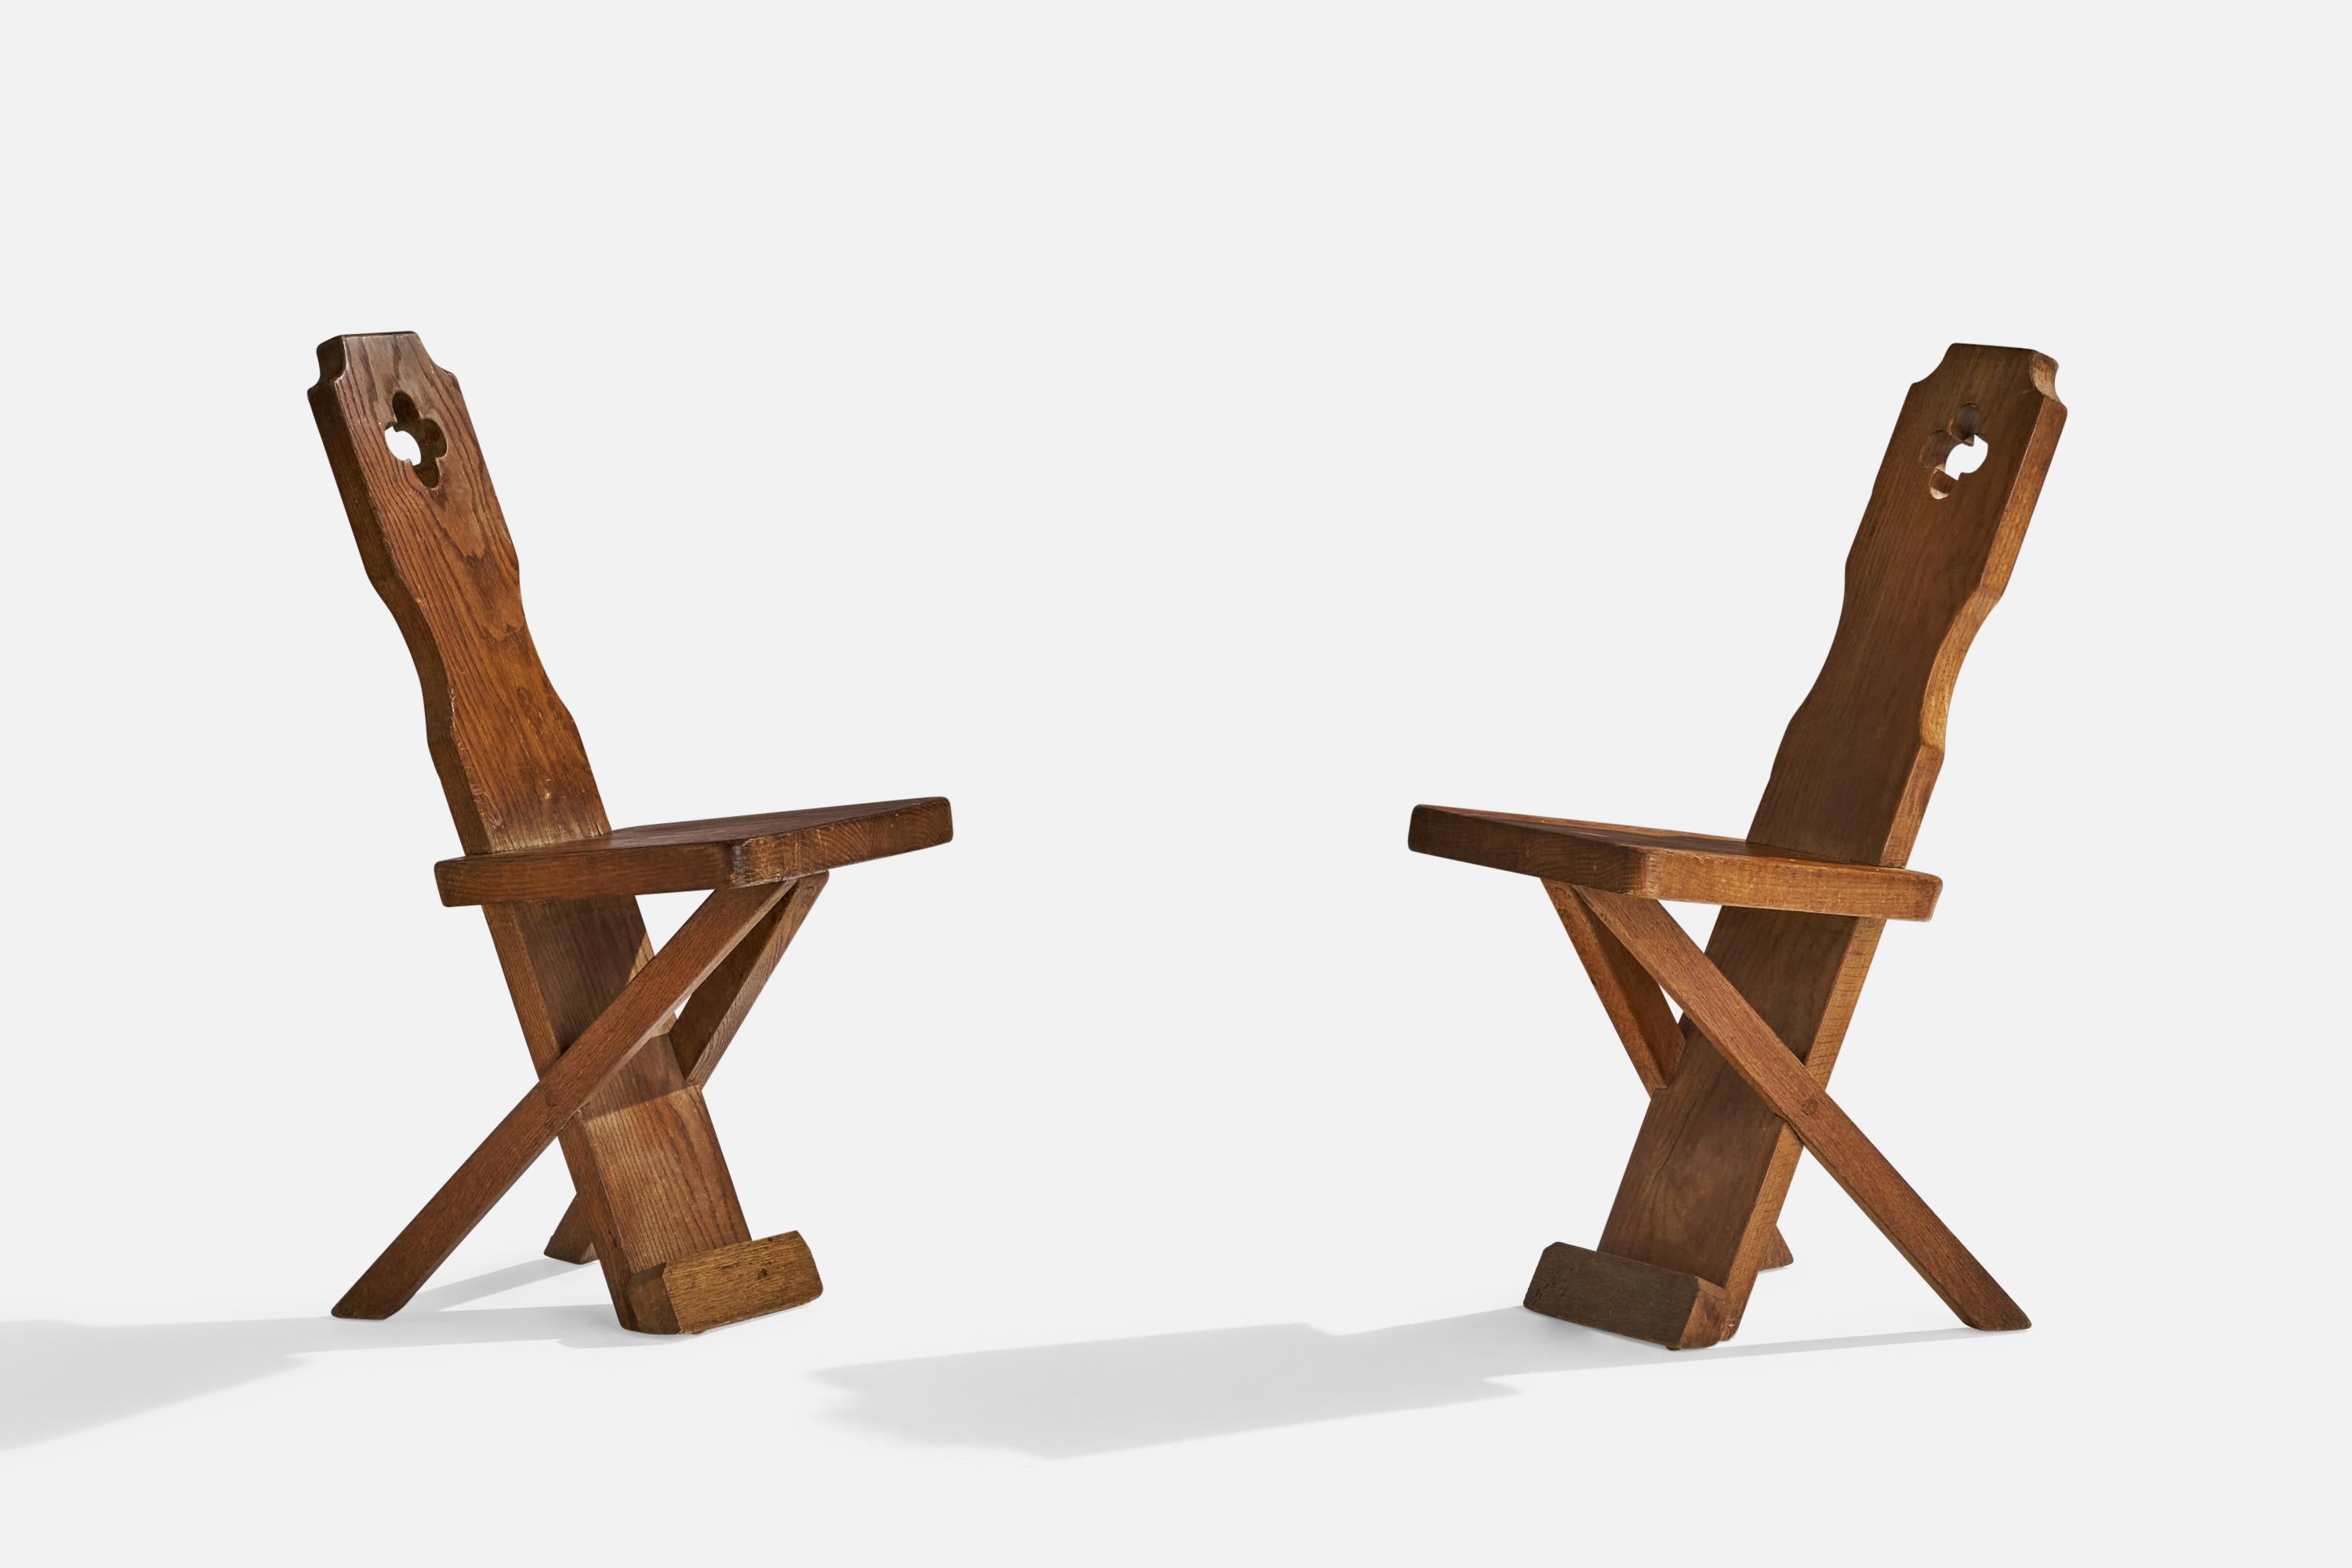 Paire de chaises d'appoint ou de chaises de salle à manger en chêne, conçues et fabriquées au Danemark, vers les années 1920.

Hauteur d'assise 18